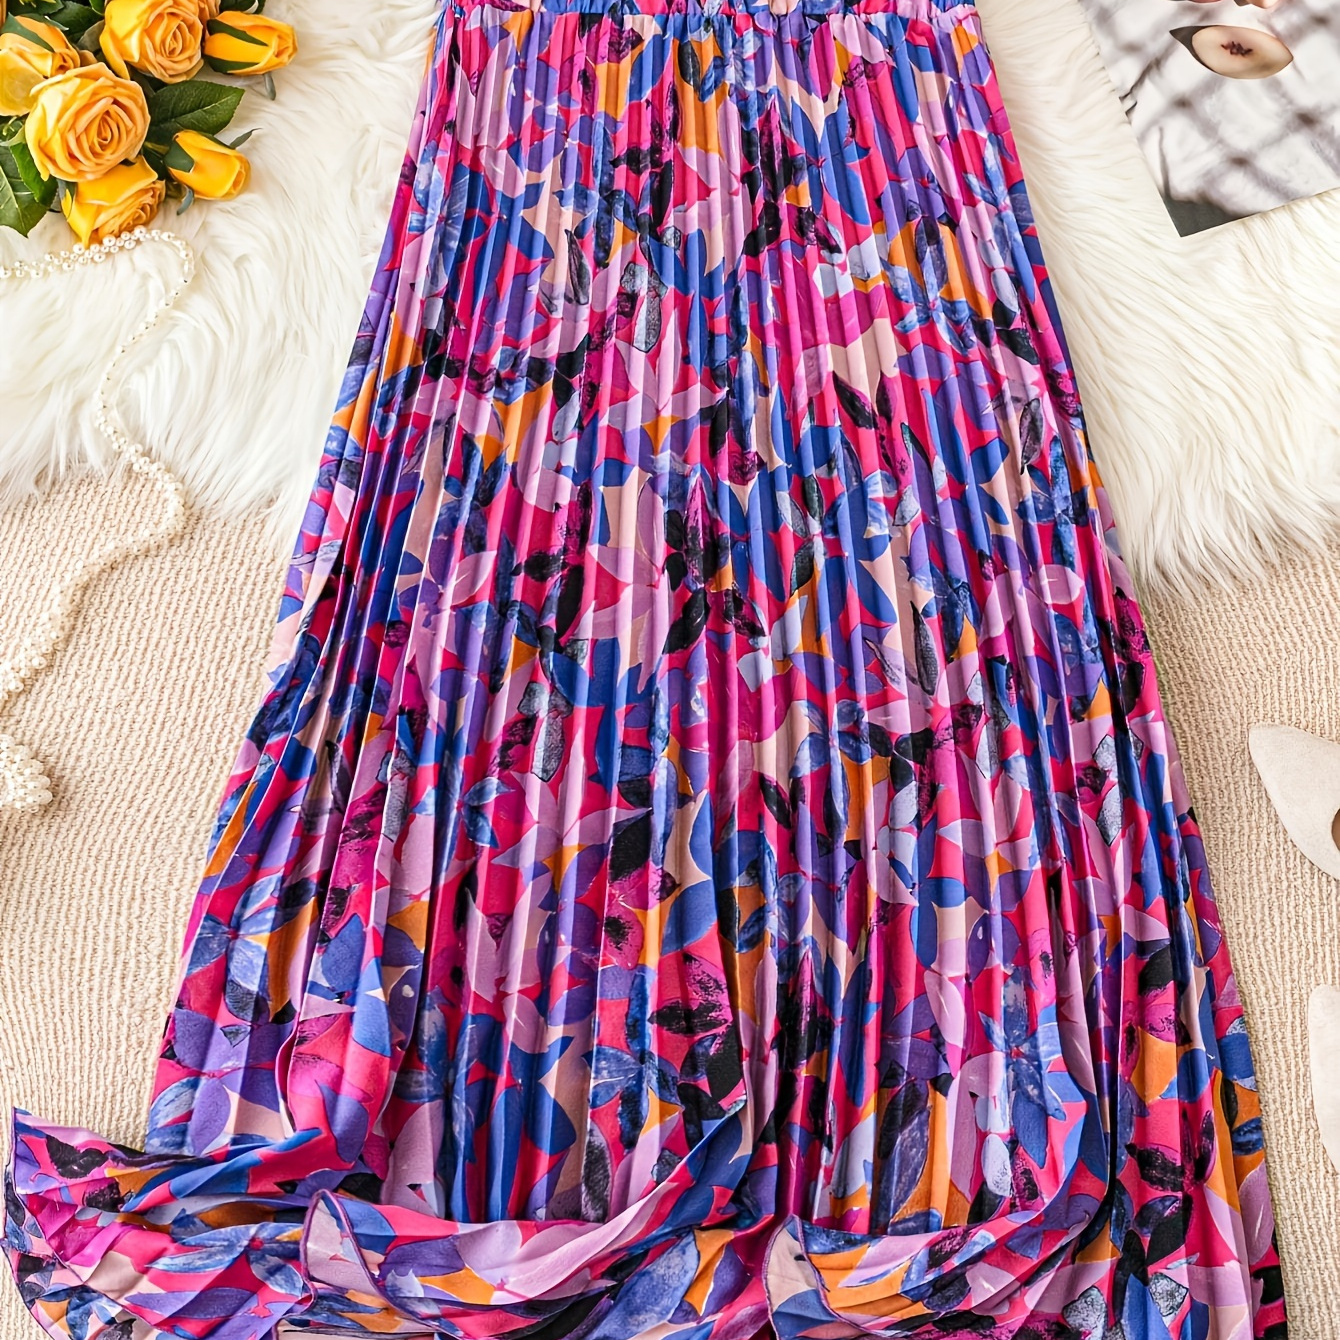 

Floral Print Elastic Waist Pleat Skirt, Elegant A-line Skirt For Spring & Summer, Women's Clothing